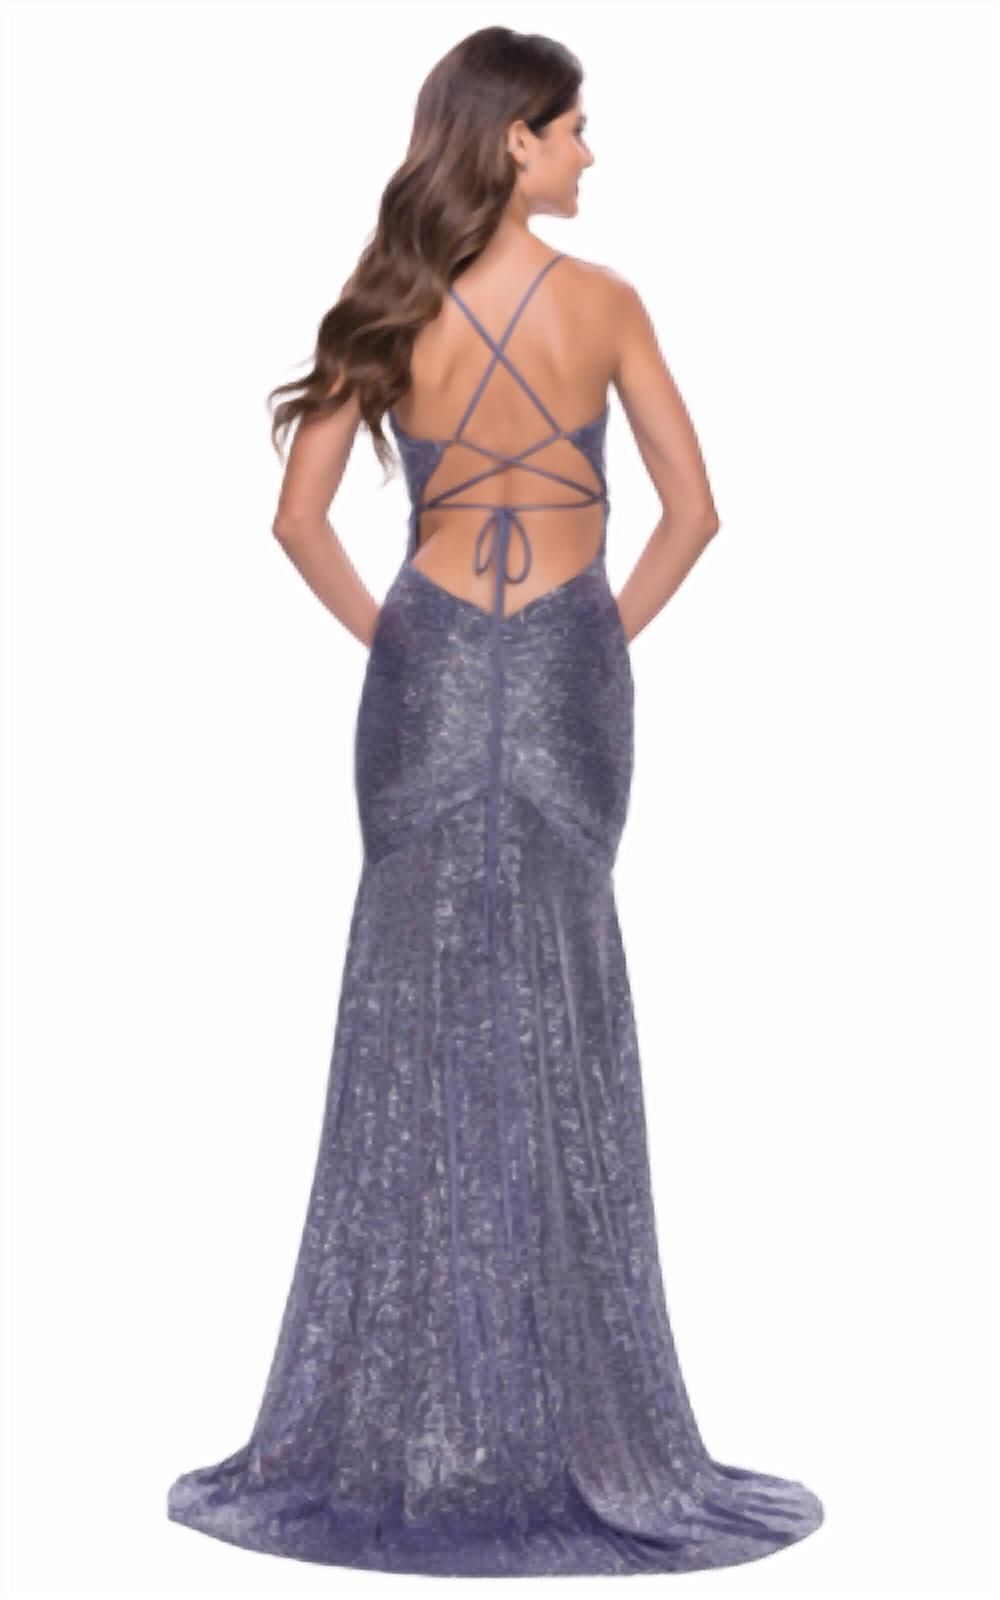 Style 1-2917248268-1901 La Femme Size 6 Prom Purple Side Slit Dress on Queenly